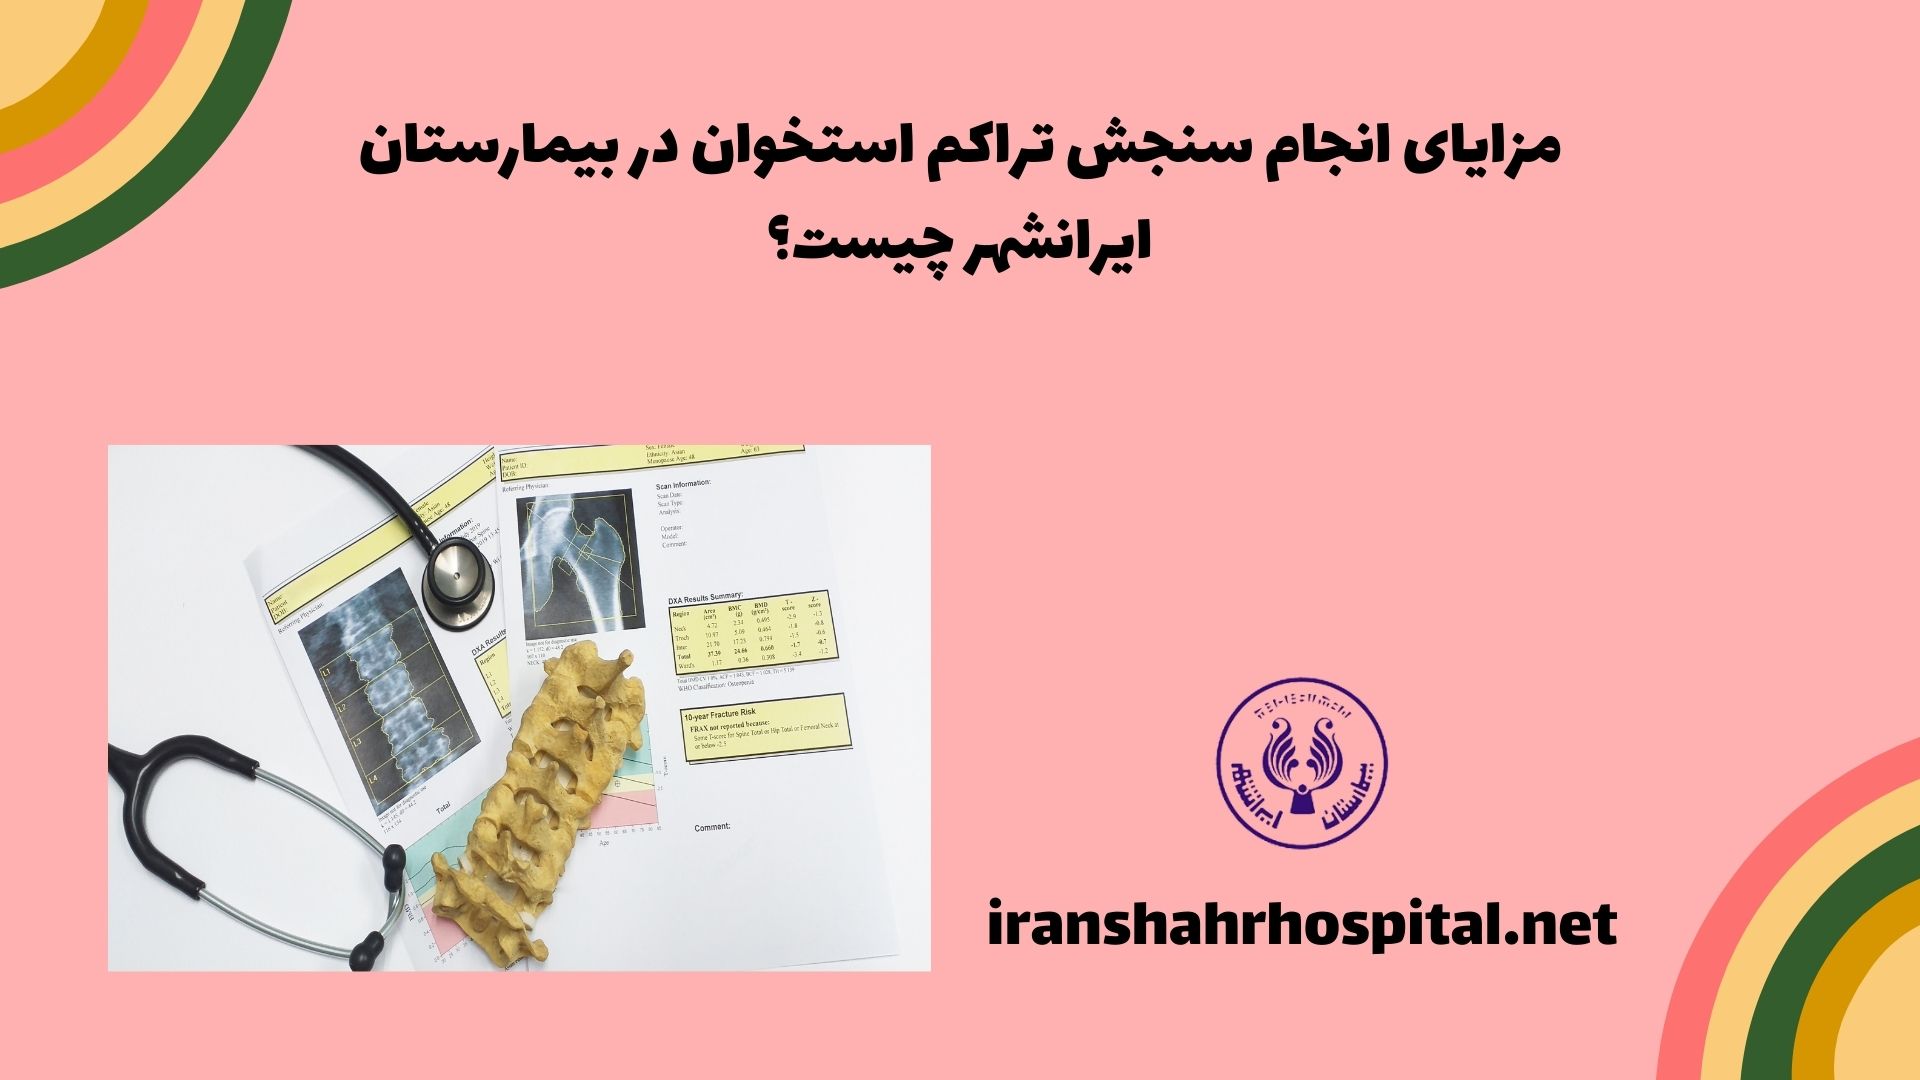 مزایای انجام سنجش تراکم استخوان در بیمارستان ایرانشهر چیست؟